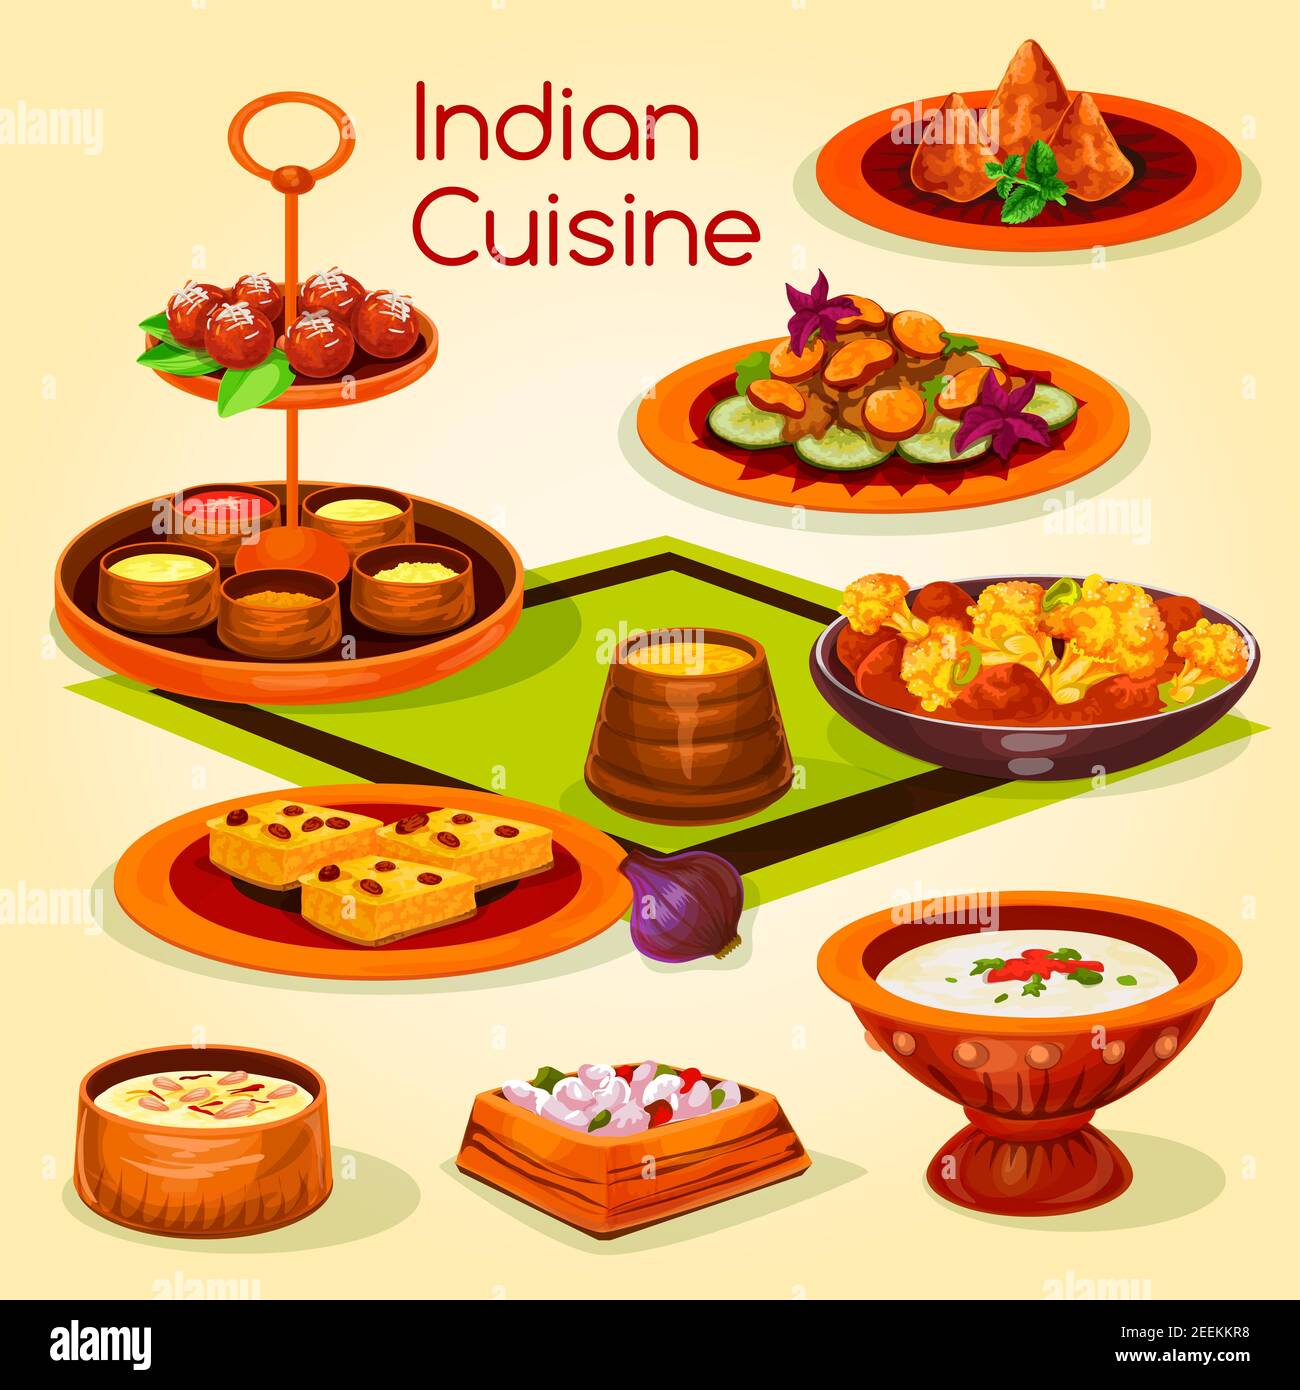 Déjeuner de cuisine indienne avec icône représentant un dessert. Poulet cuit aux légumes, samosa aux pommes de terre, sauce au yogourt aux tomates, ragoût de champignons, dessert au riz avec noix Illustration de Vecteur